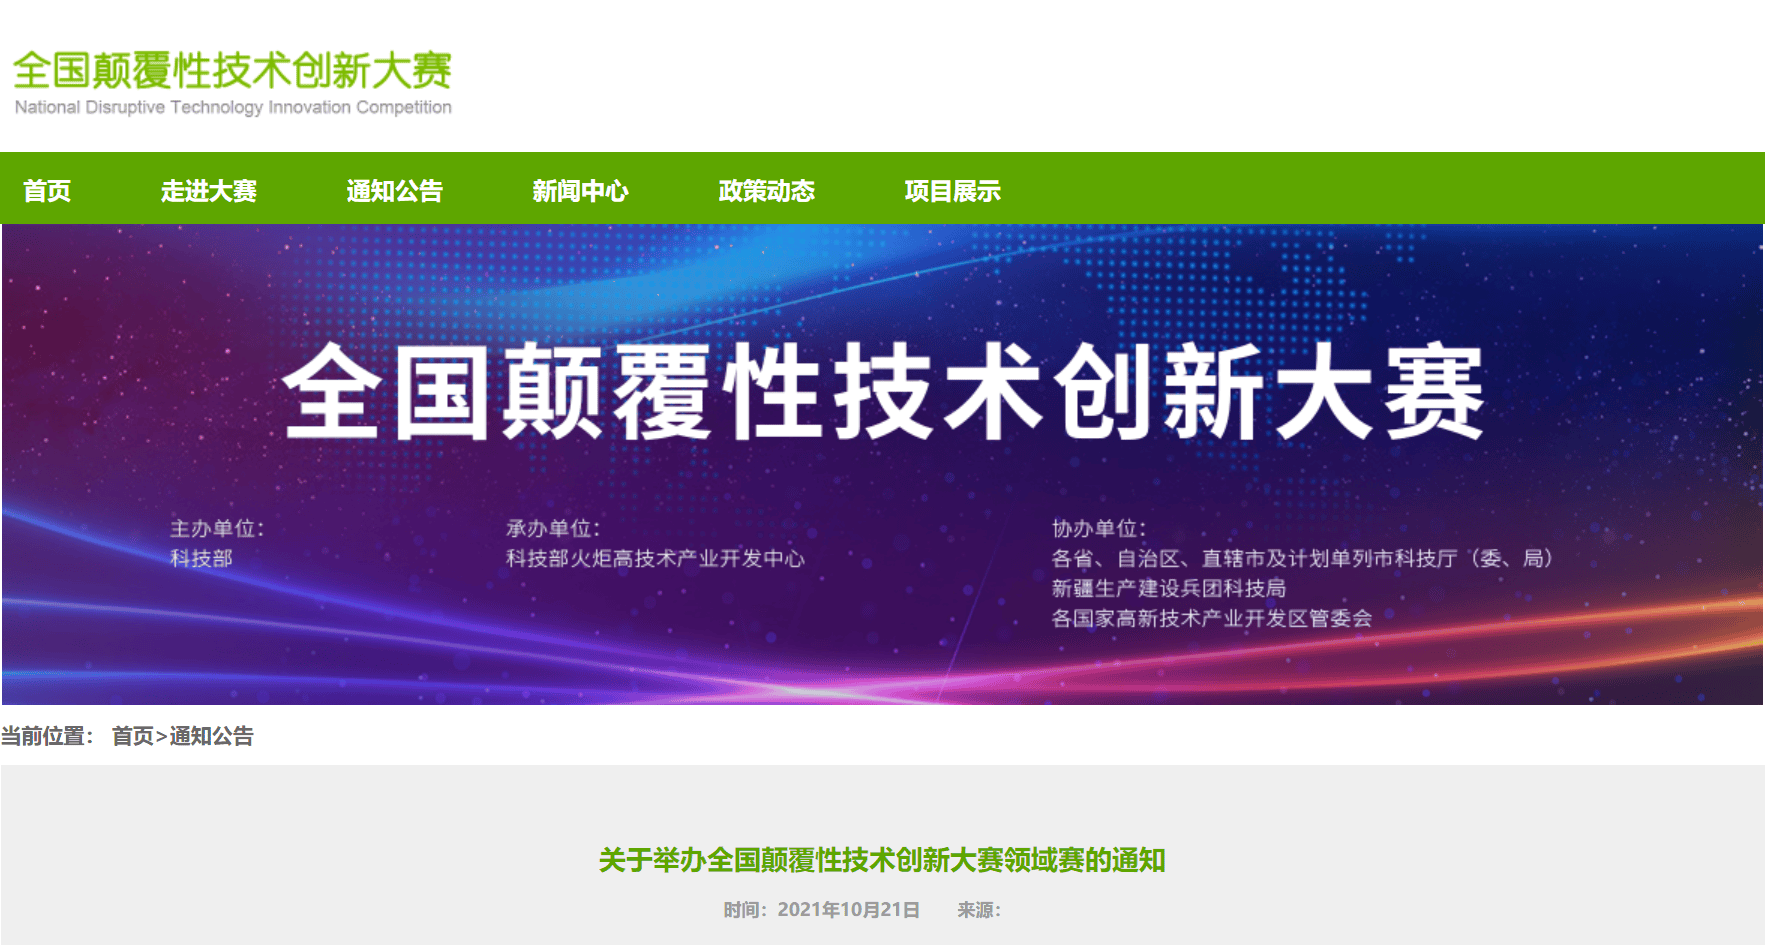 上海聯淨全國顛覆性技術創新大賽領域賽入圍